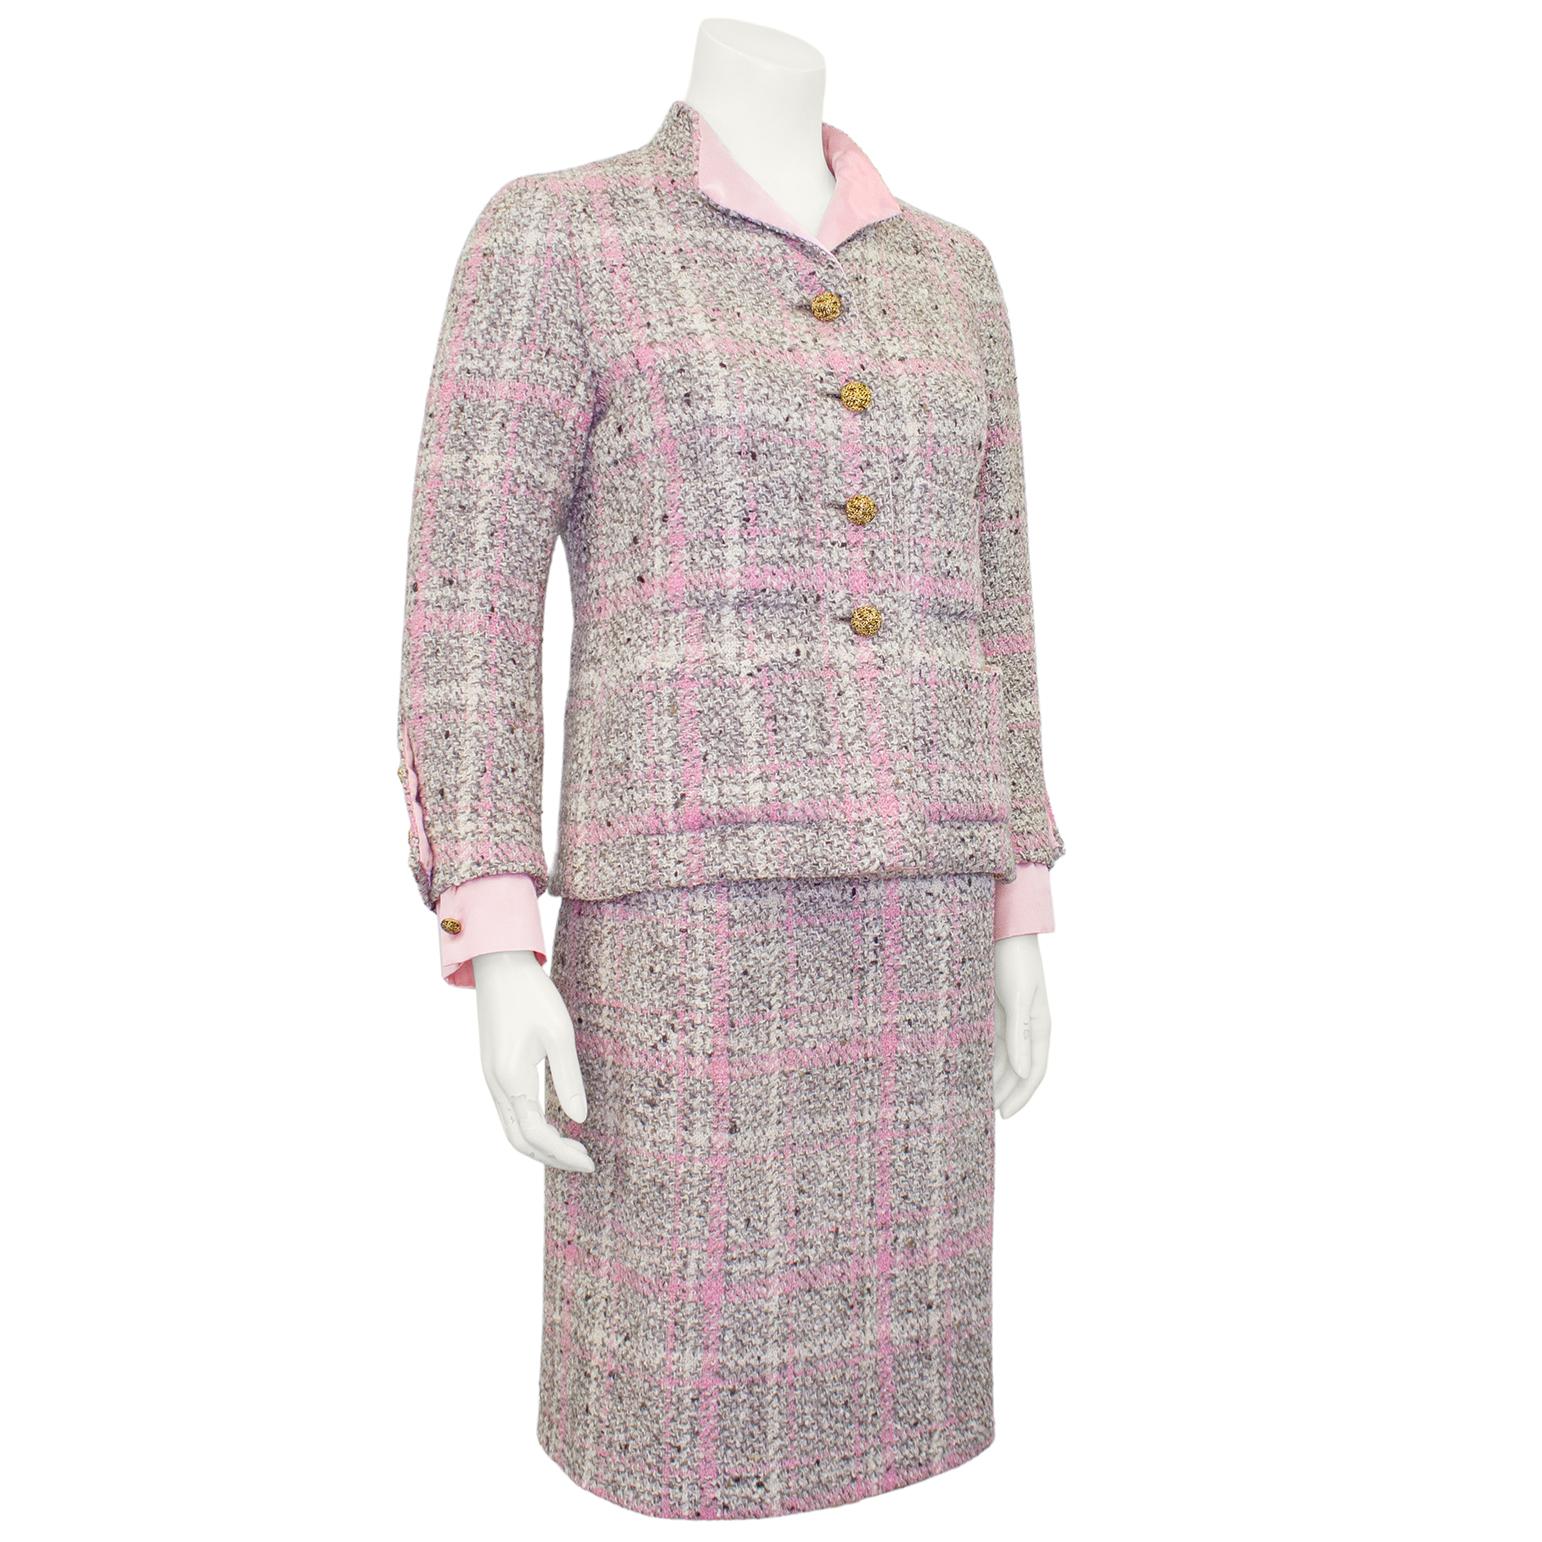 Costume Chanel Haute Couture des années 1960. La veste et la jupe sont fabriquées dans un tweed de laine gris brun avec un plaid rose et blanc. La veste est doublée de soie rose pâle qui se révèle au niveau du col à oreilles et des poignets. Quatre